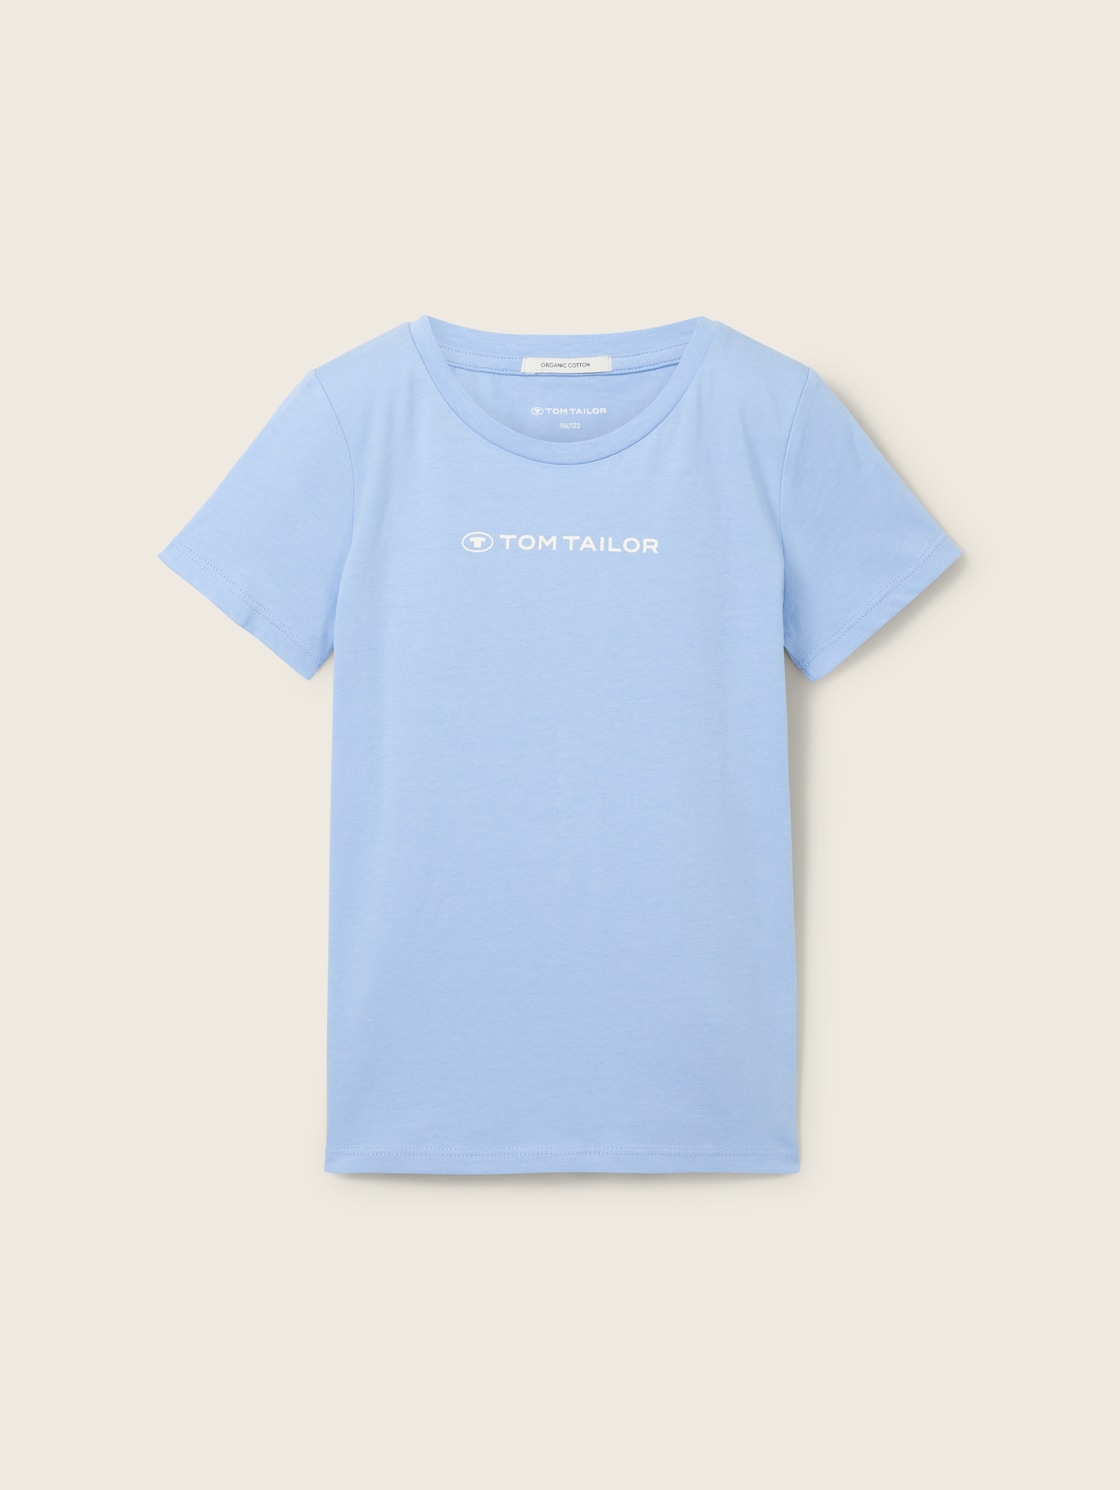 TOM TAILOR Mädchen T-Shirt mit Bio-Baumwolle, blau, Logo Print, Gr. 92/98 von Tom Tailor